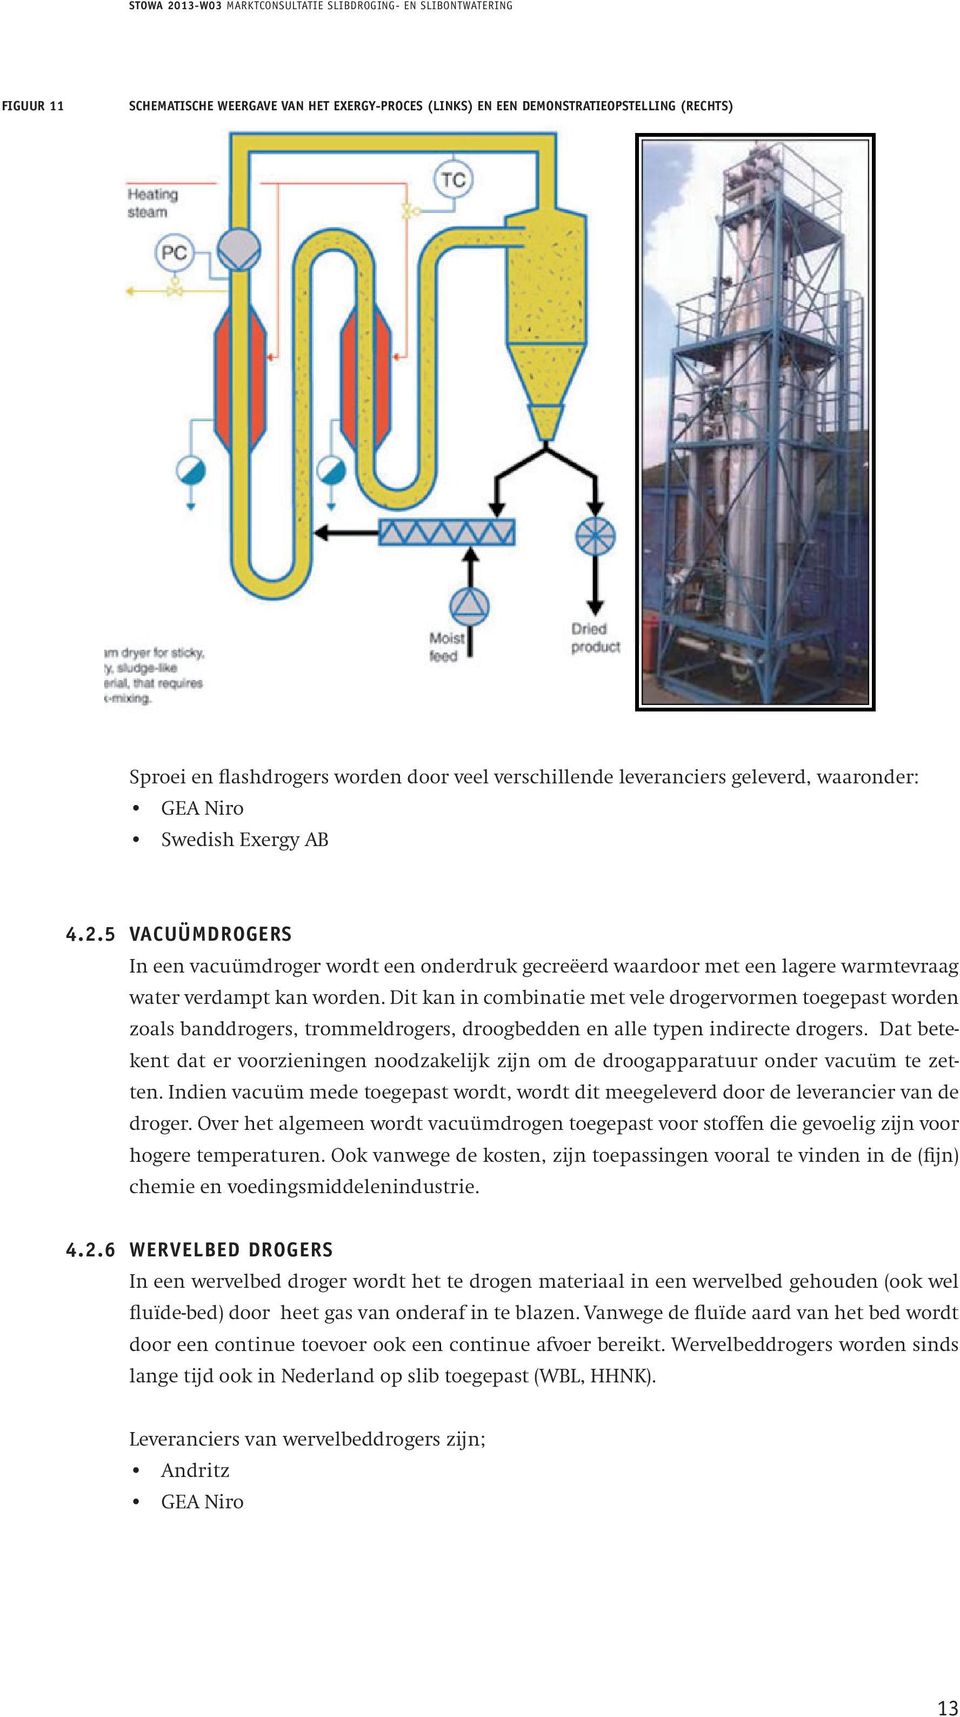 StoWa 2013-W03 Marktconsultatie slibdroging- en slibontwatering Het Exergy proces is een type flashdroger waarvan toepassingen op demonstratieschaal op communaal slib bekend zijn.